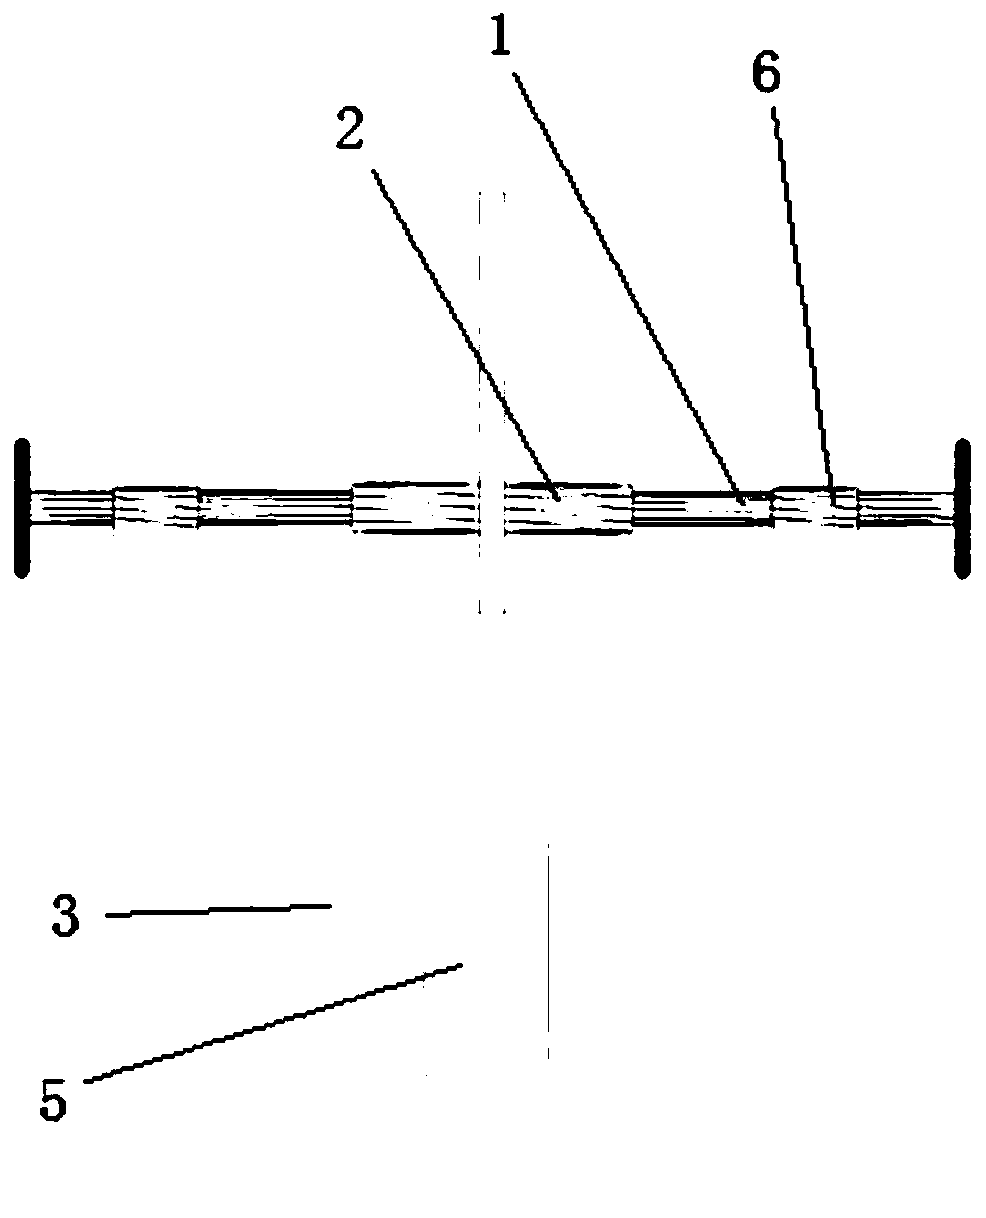 Method for enlarging anchoring position of safety belt